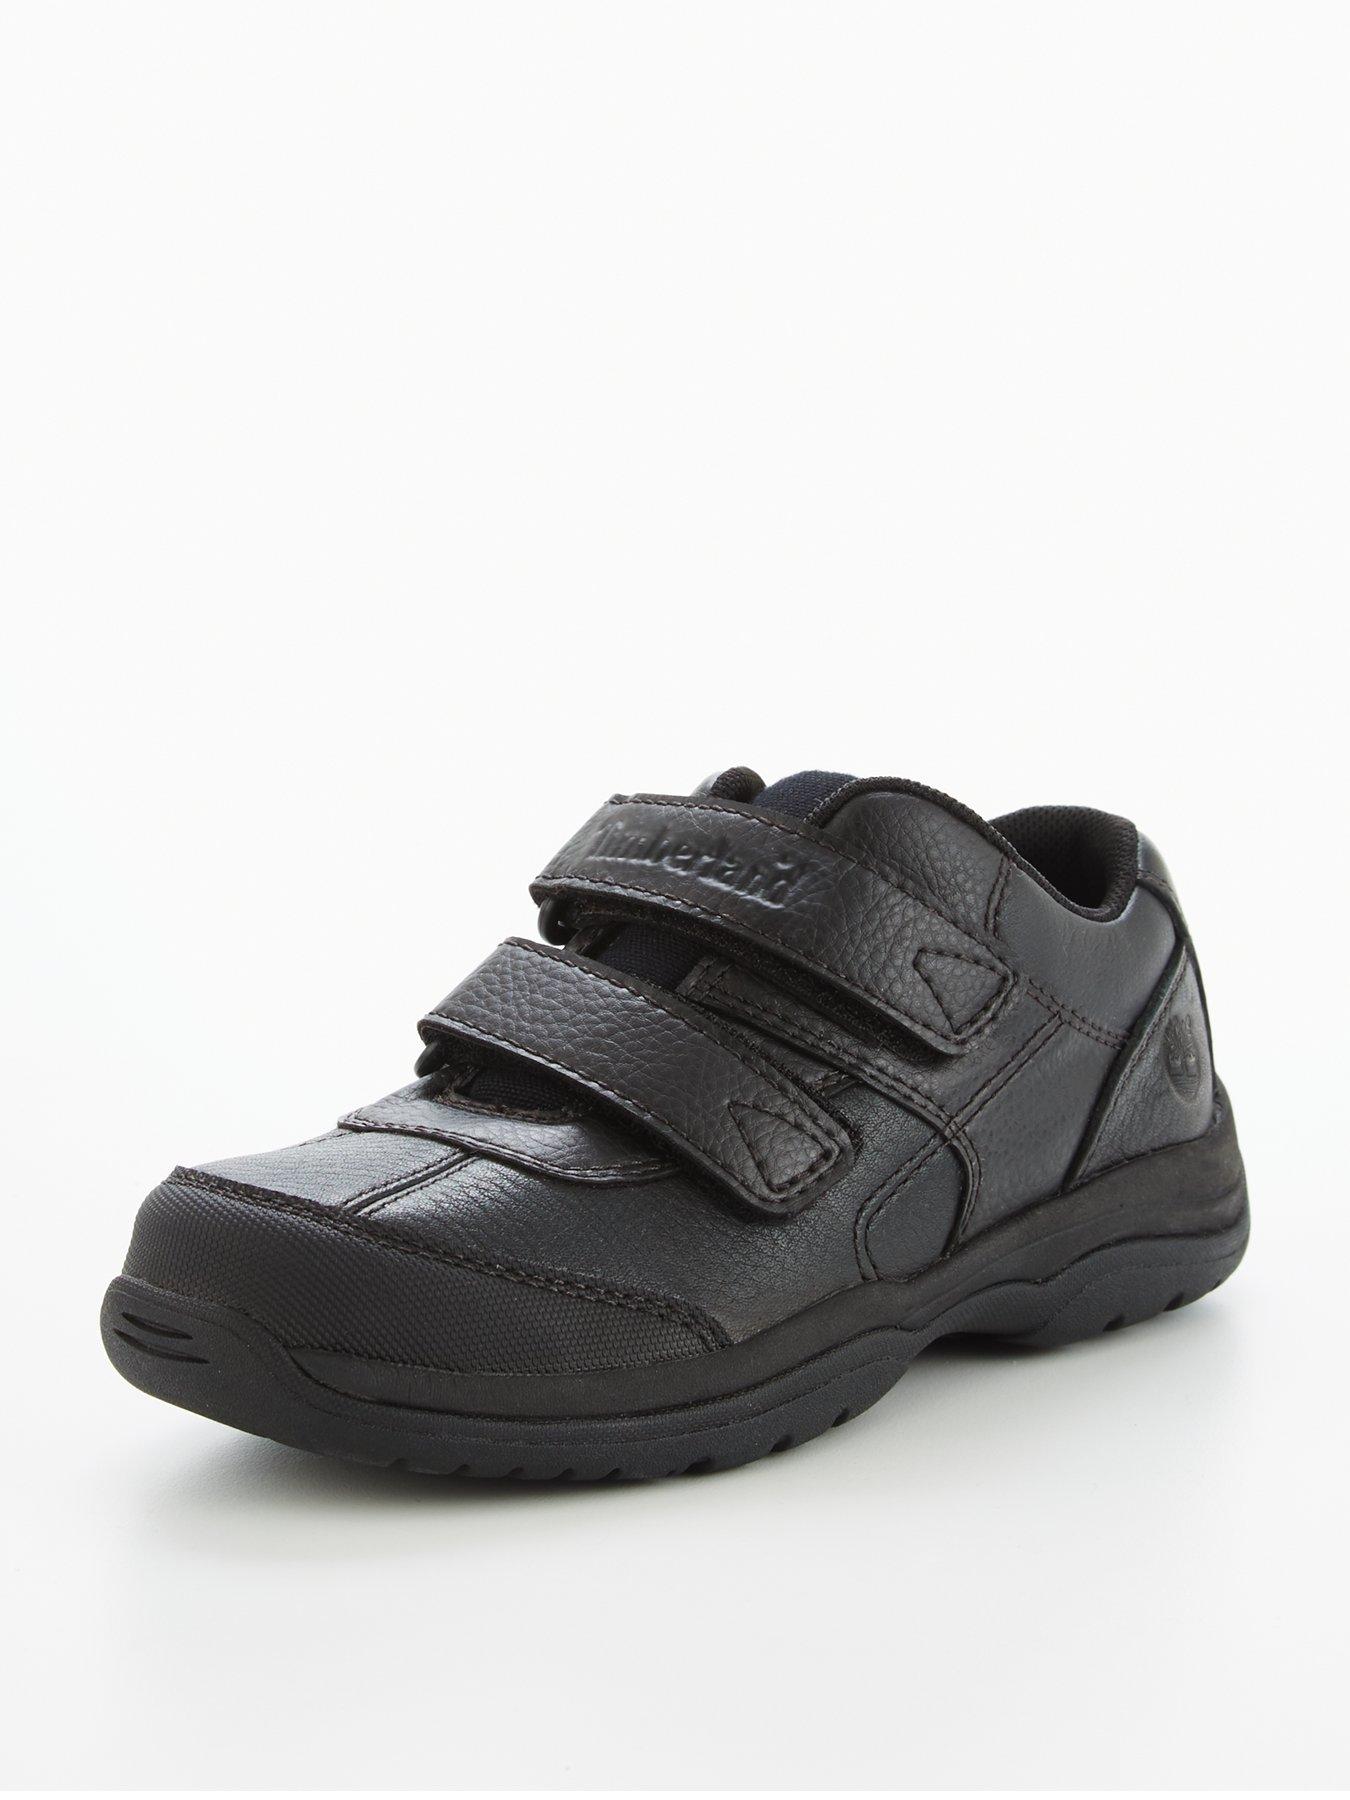 Timberland | Shoes \u0026 boots | Child 